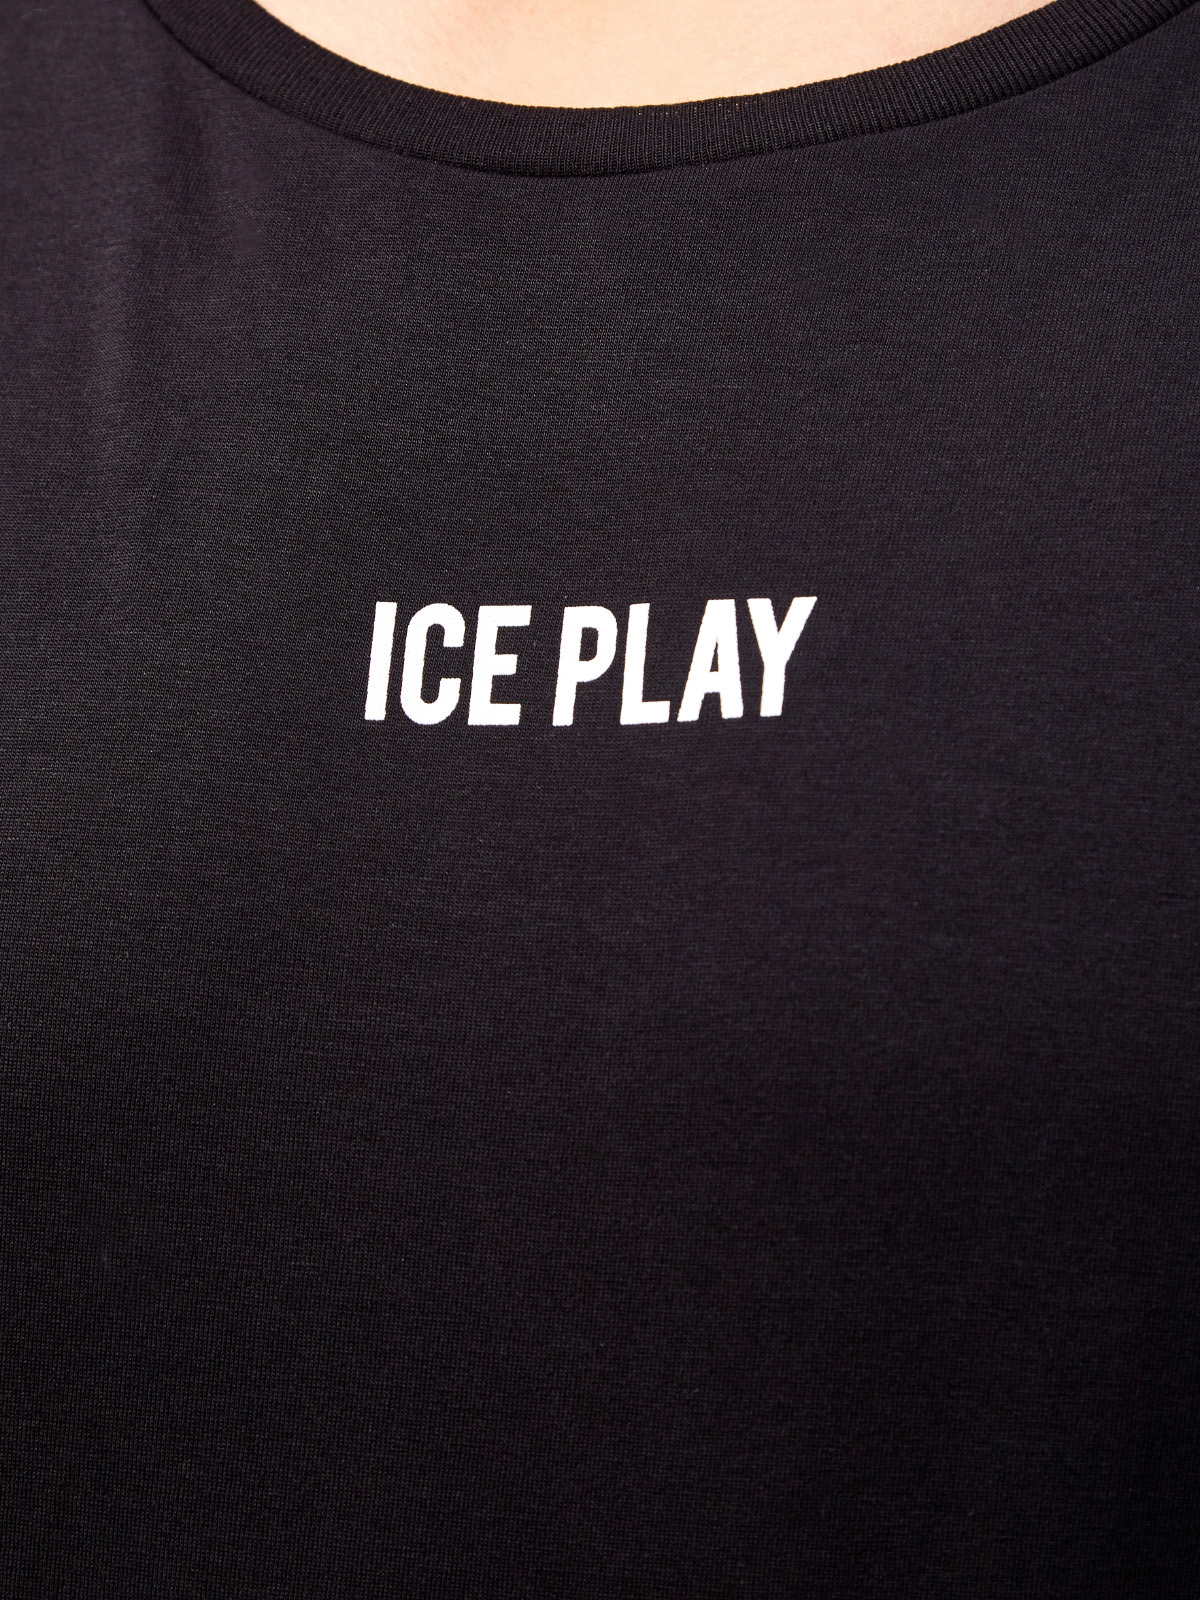 Футболка из хлопка джерси с контрастным принтом ICE PLAY, цвет черный, размер S;M;L - фото 5